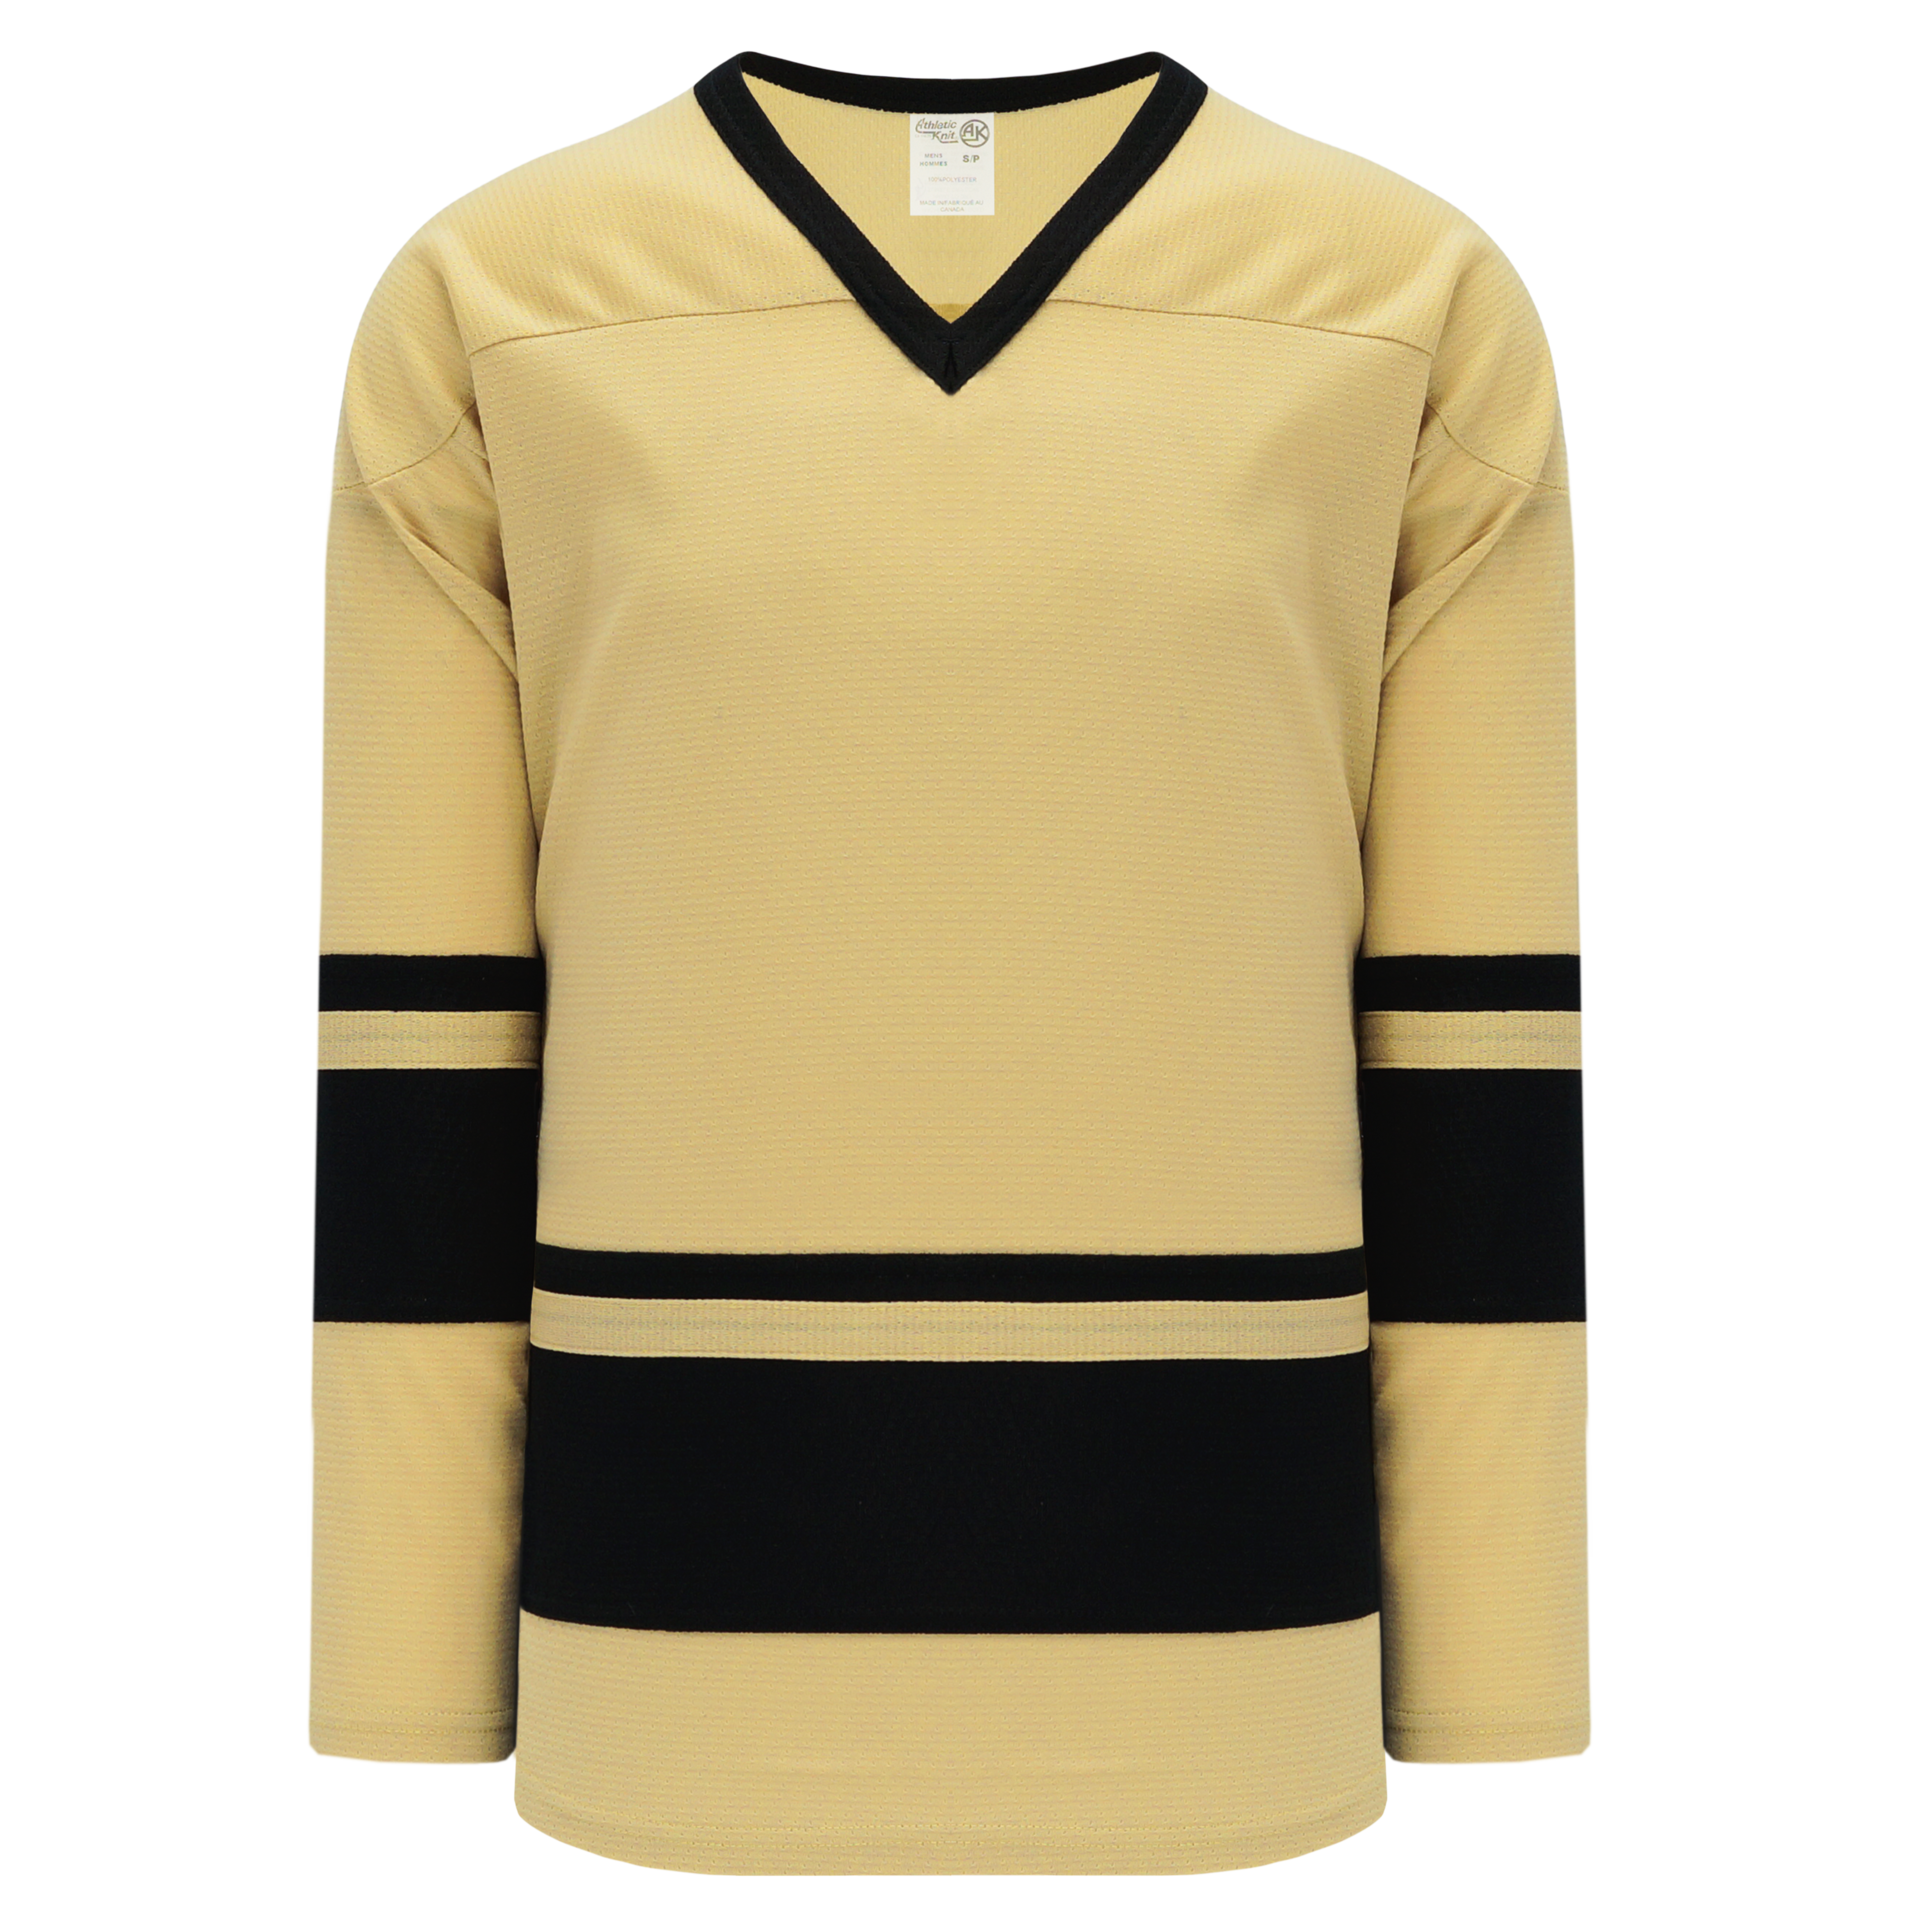 Athletic Knit (AK) H7000A-761 Adult Navy/Sky Blue Select Hockey Jersey Goalie (4XL)